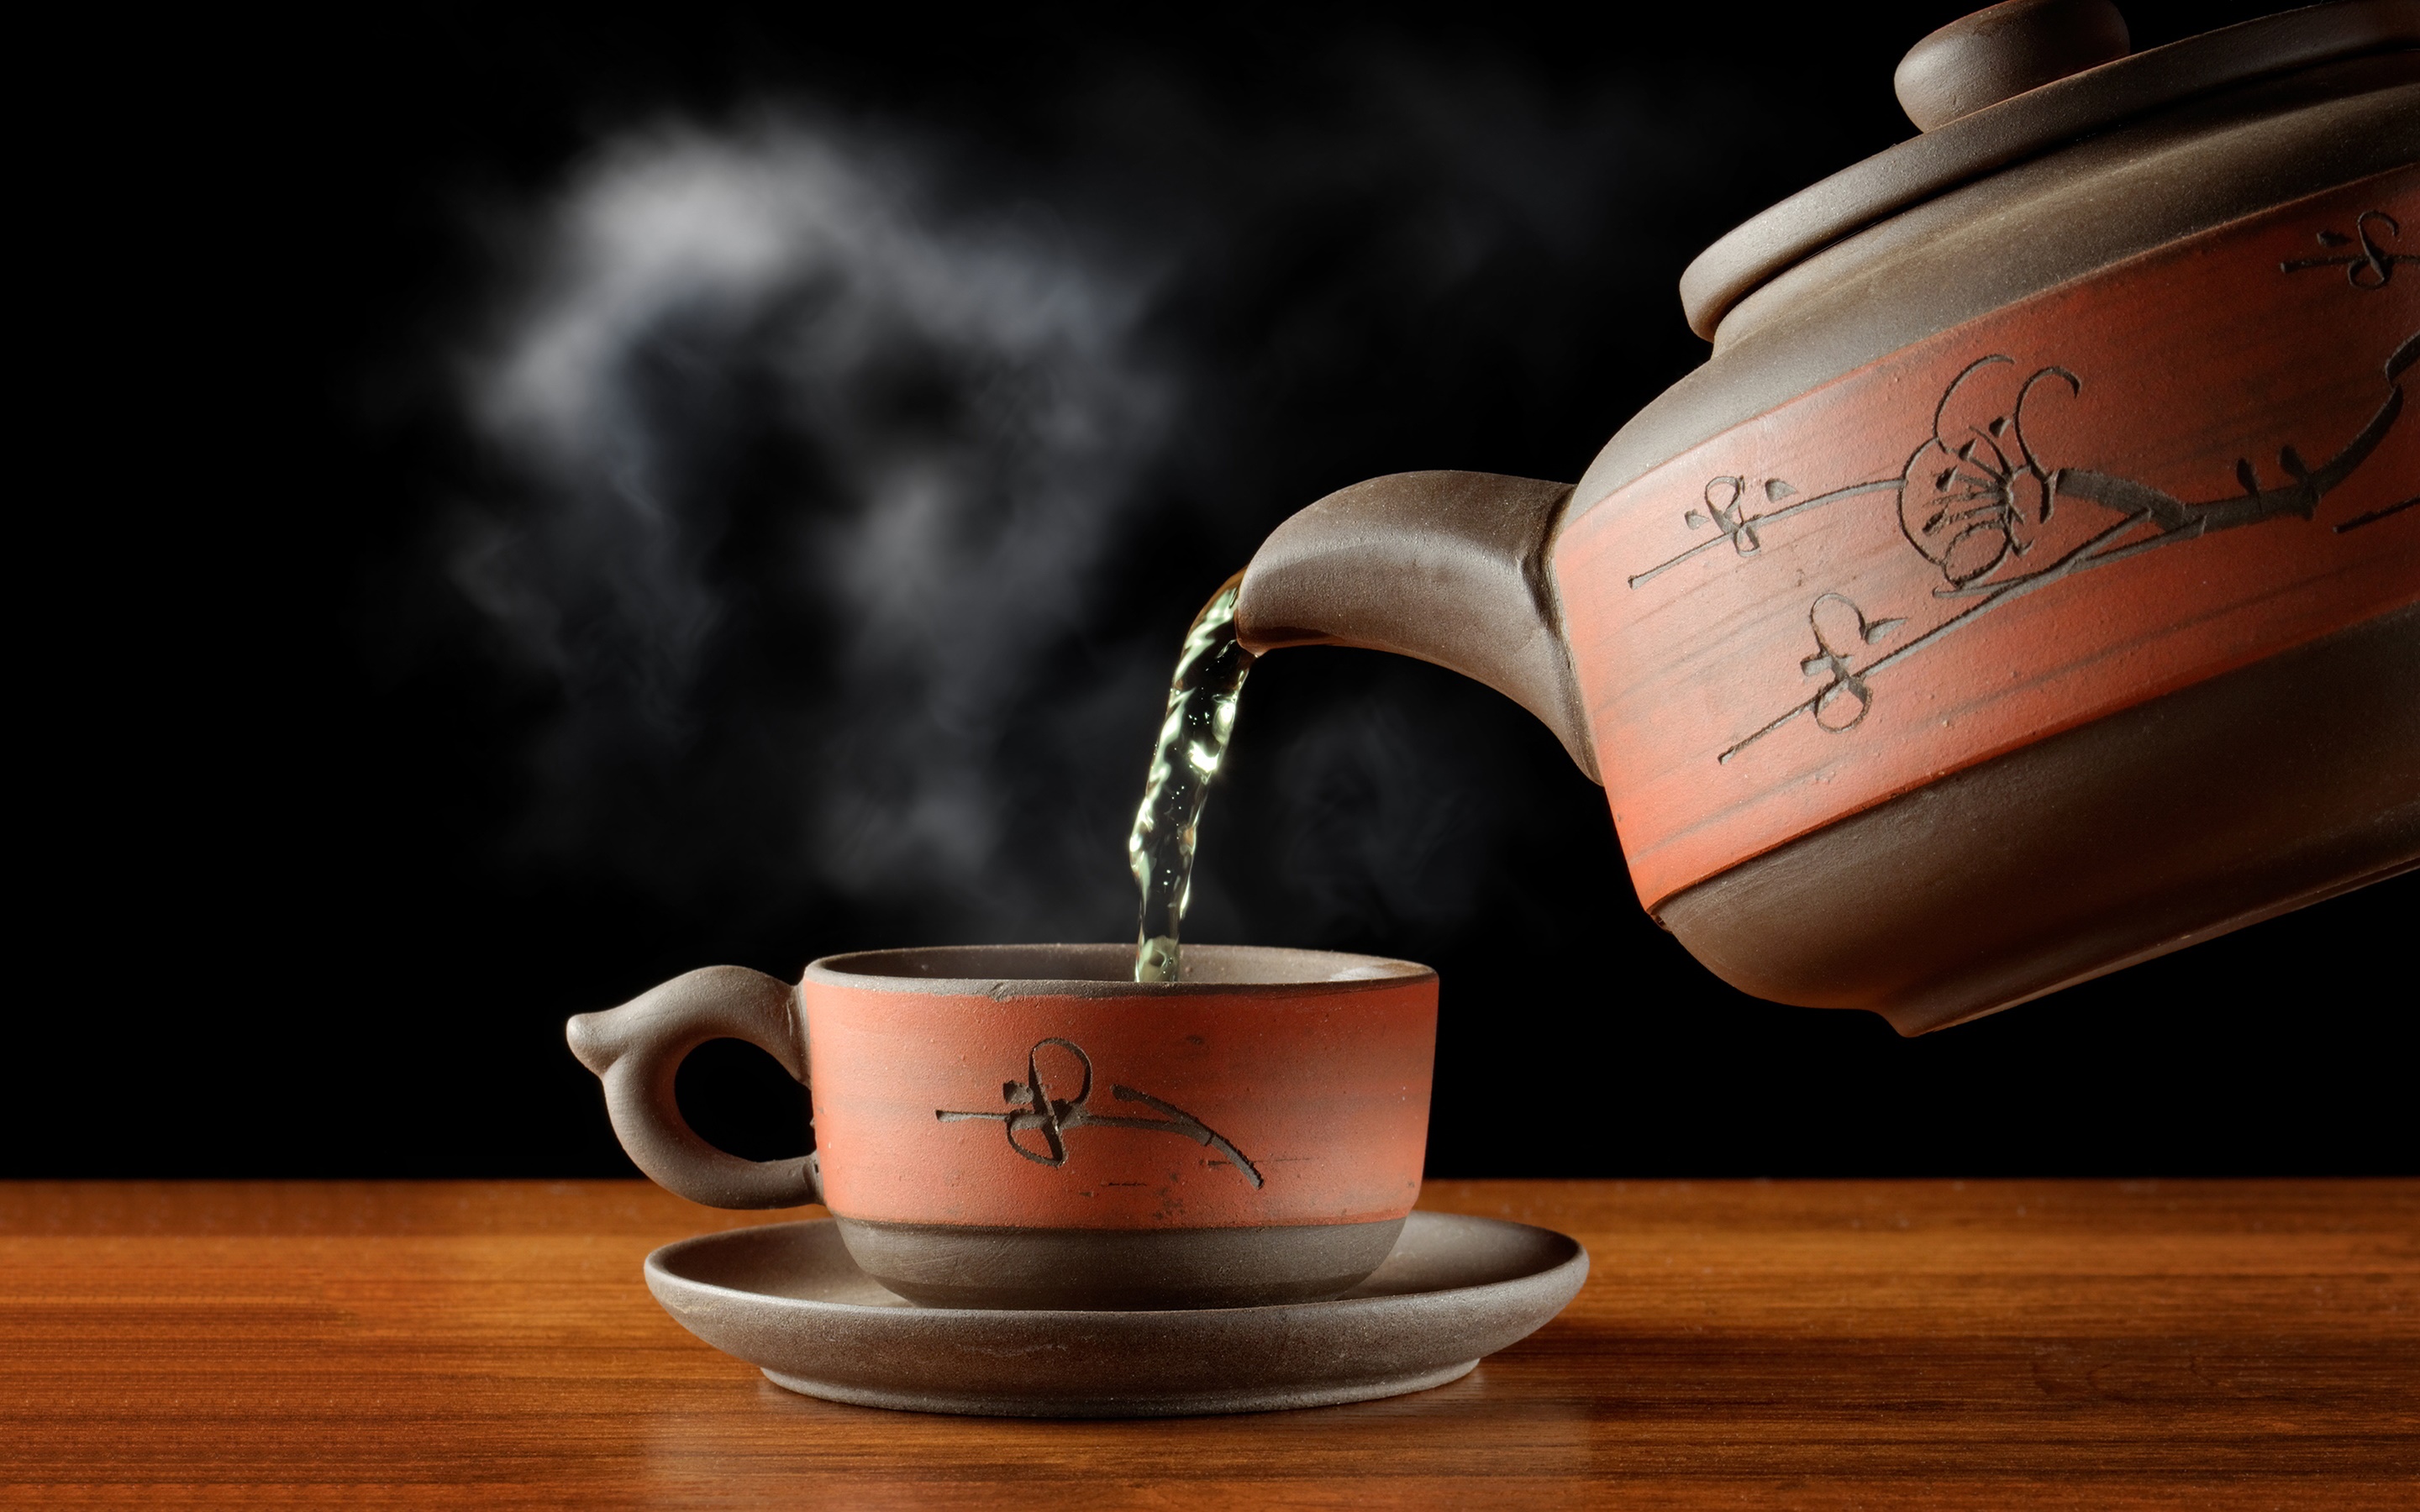 بیماری هایی که بر اثر نوشیدن چای داغ بروز می کنند